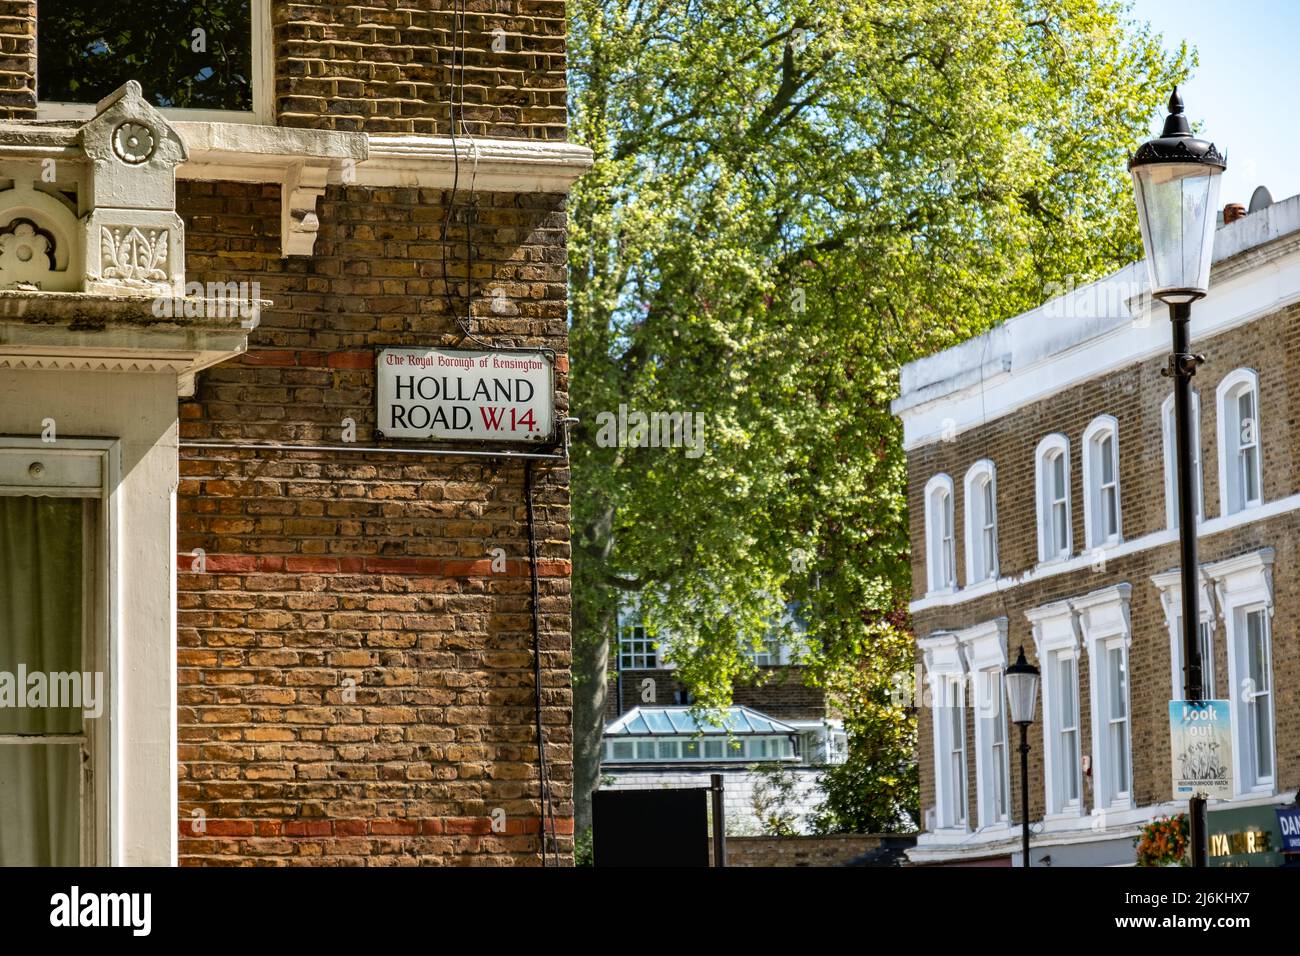 London: Blick auf die Stadthäuser von West London mit einem Sportwagen, der draußen geparkt ist Stockfoto